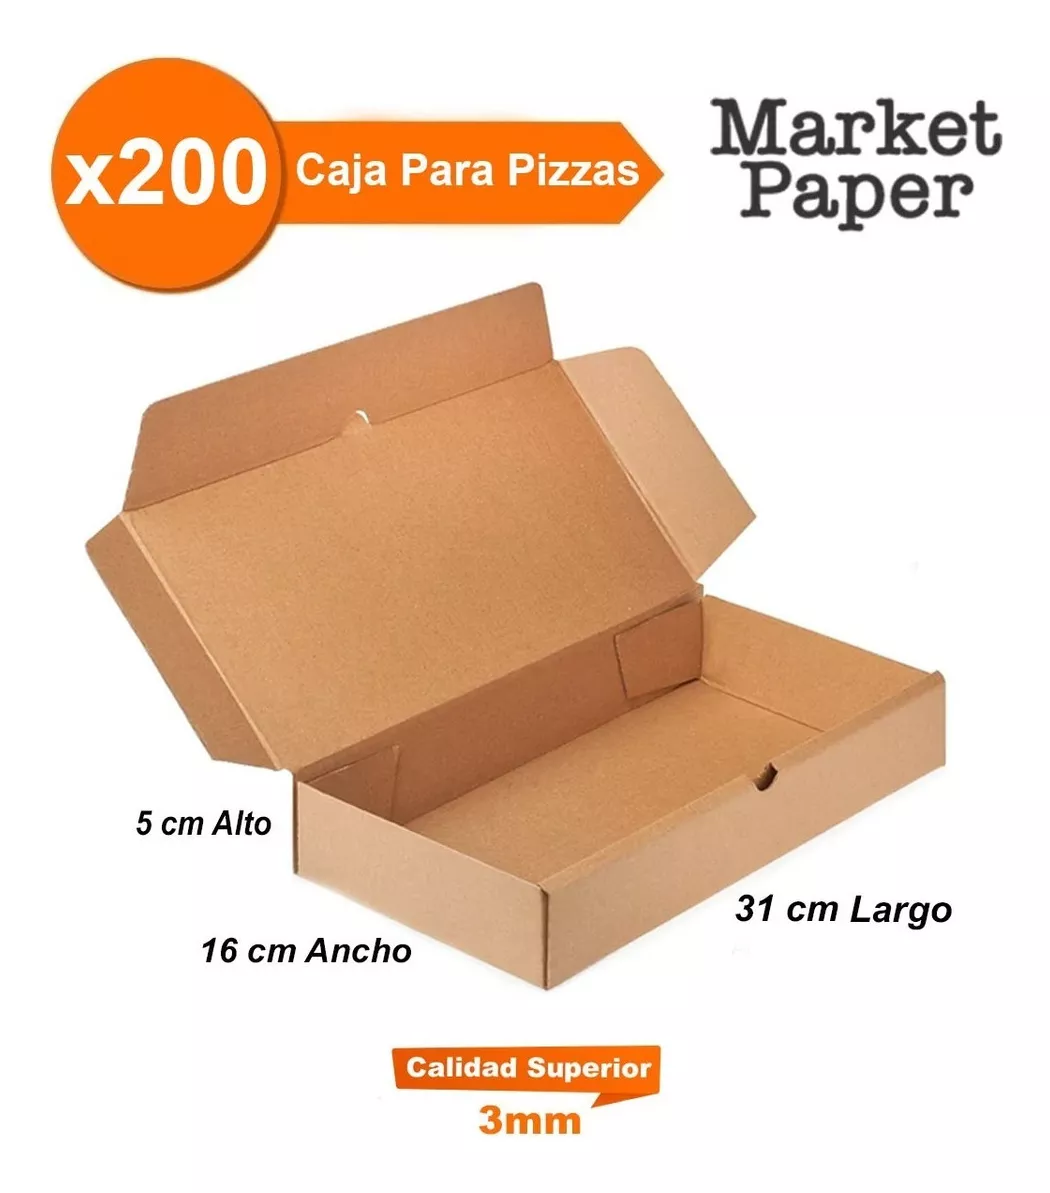 Tercera imagen para búsqueda de caja pizza